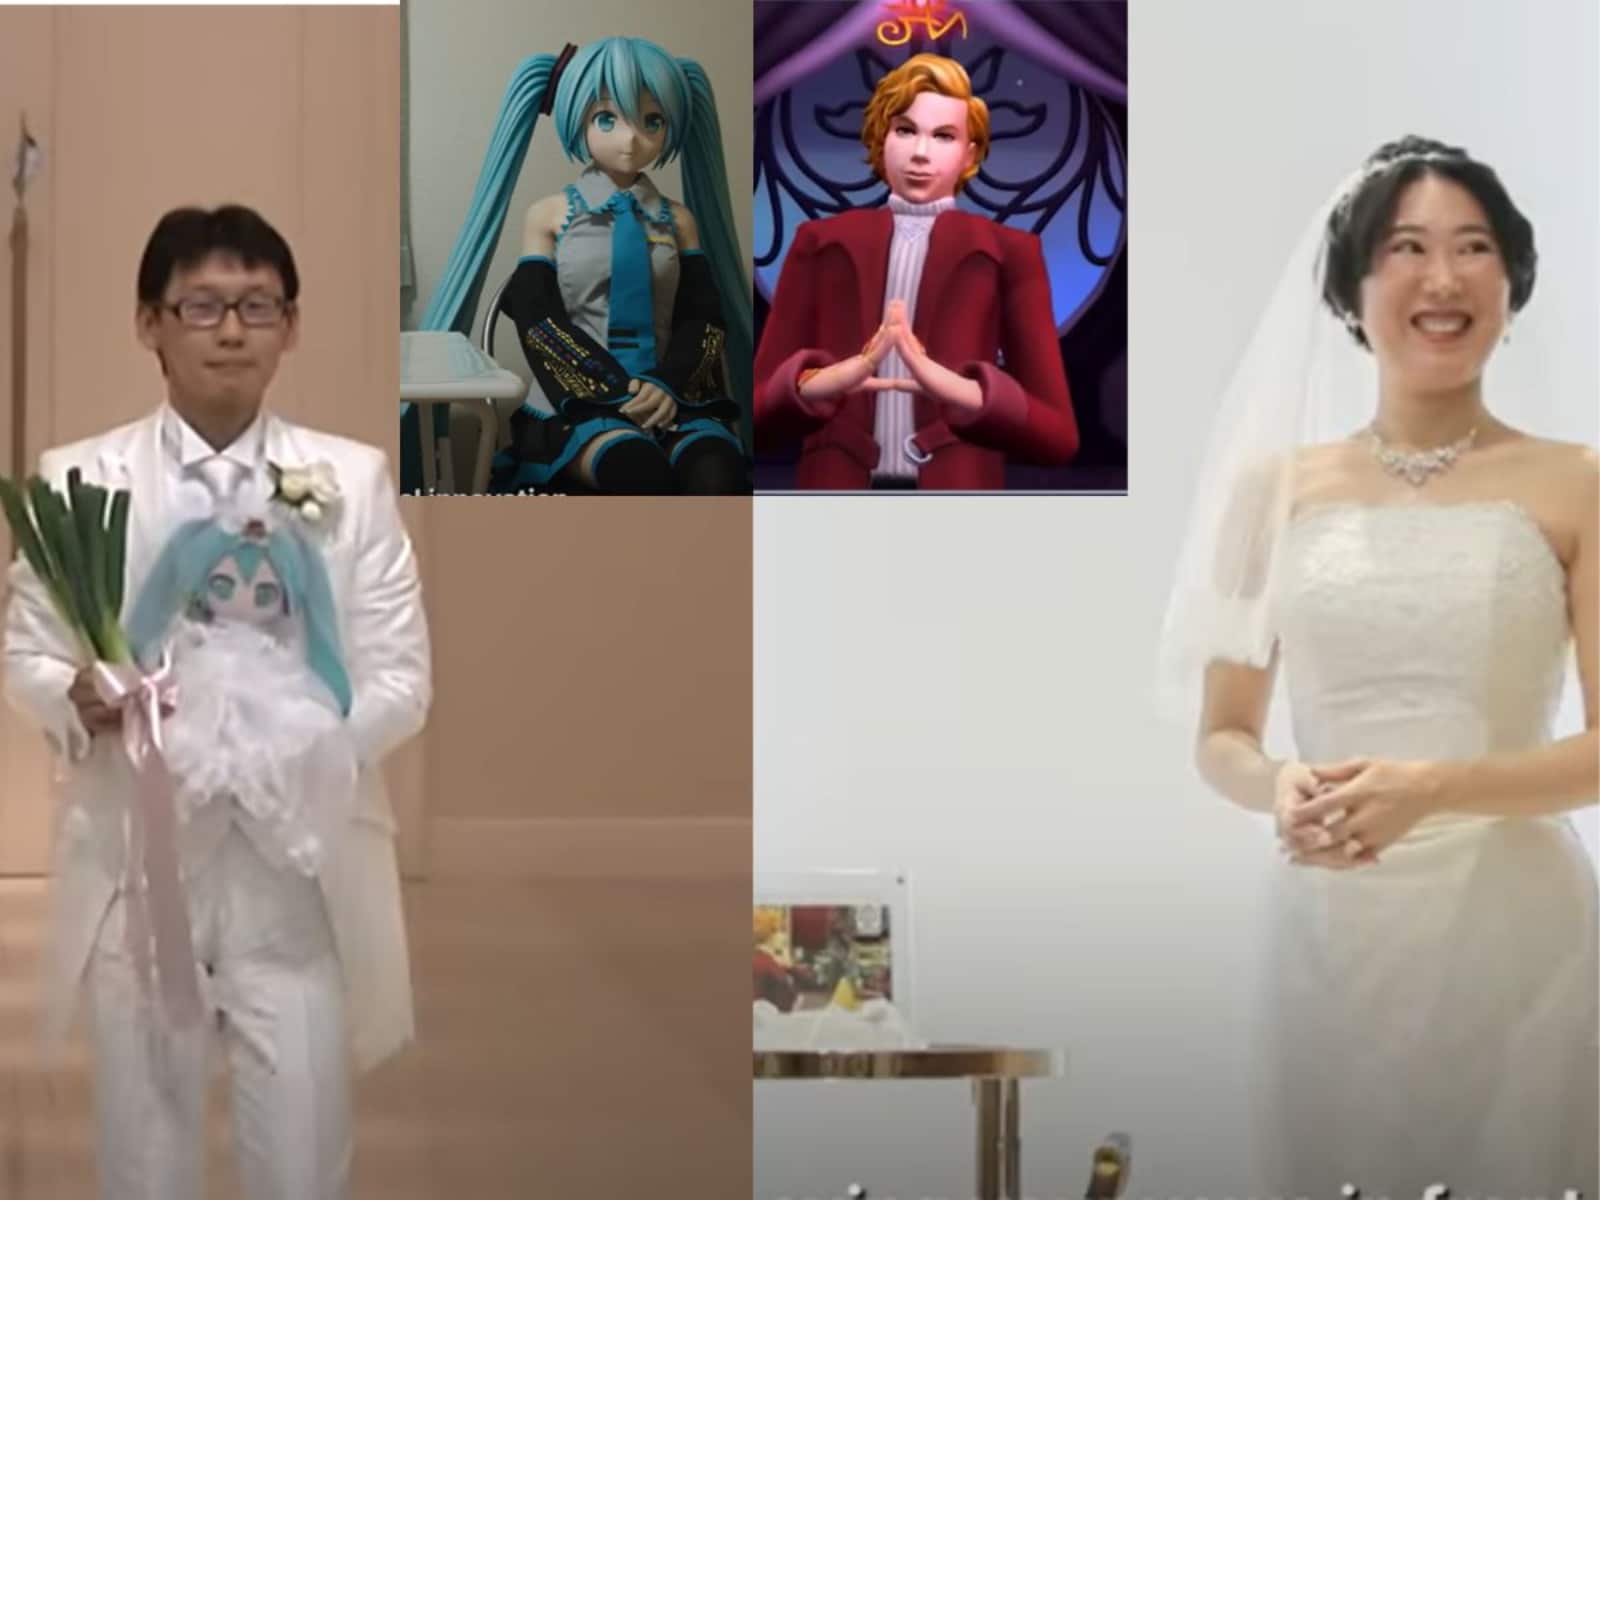 Korean Otaku Marries Anime Body Pillow - The Escapist